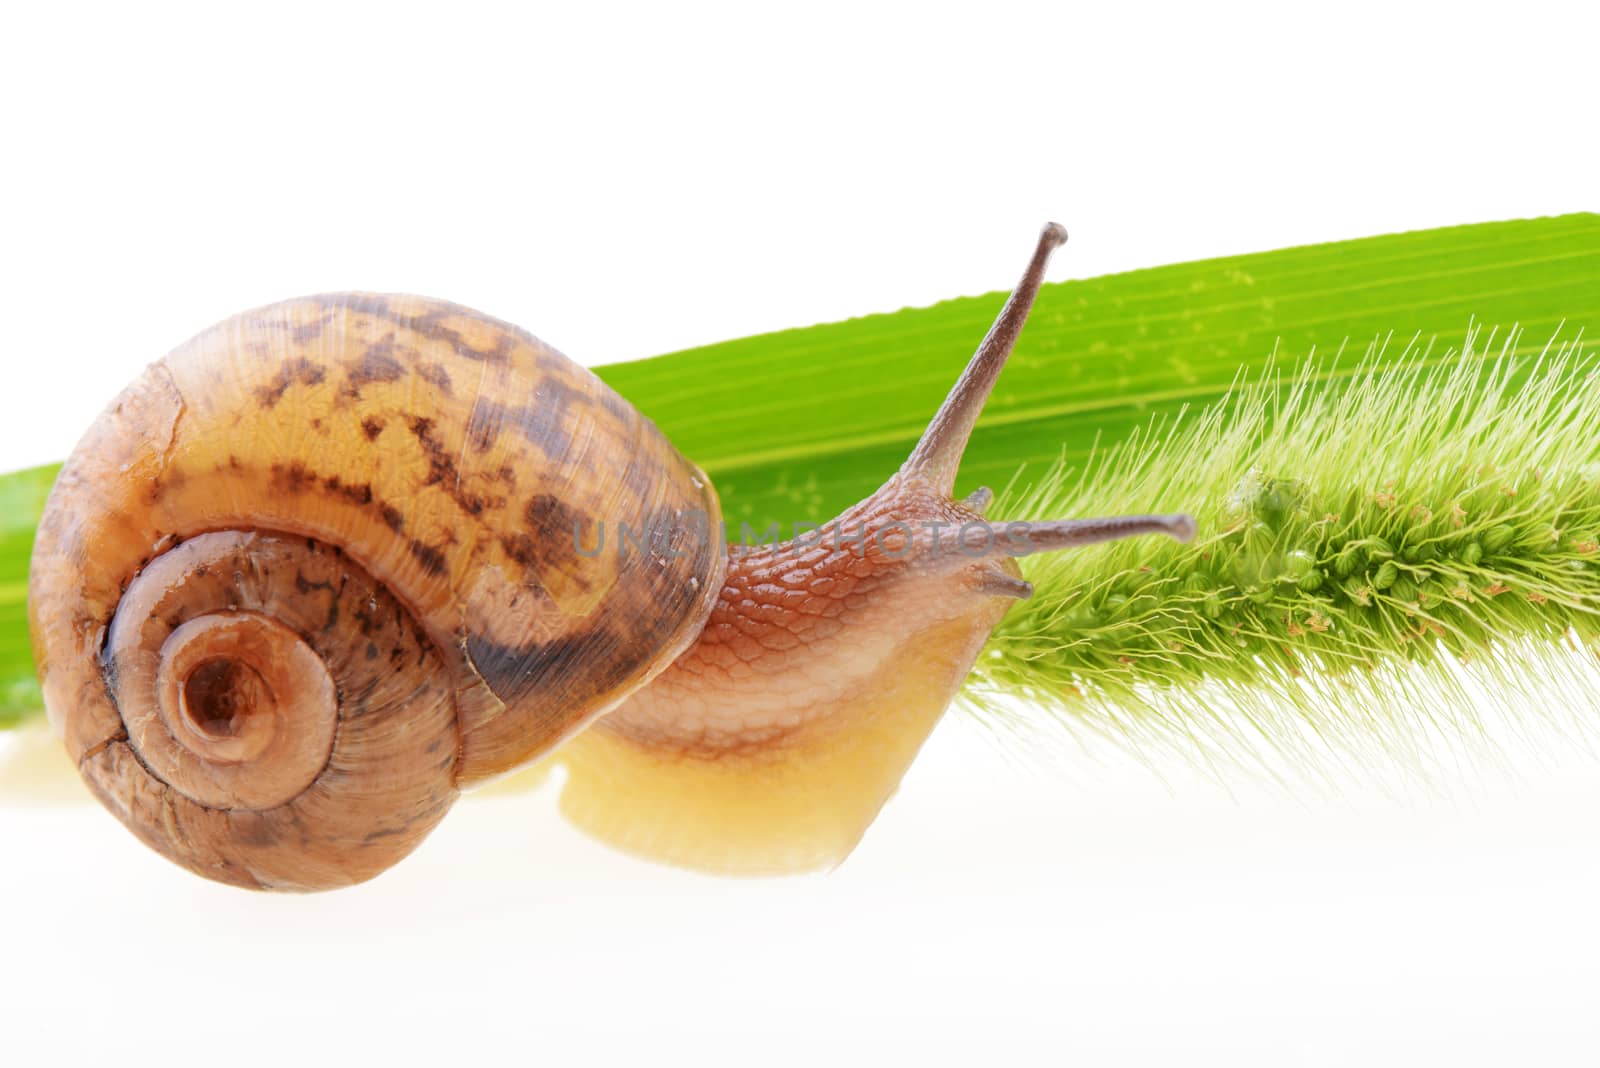 Snail on grass